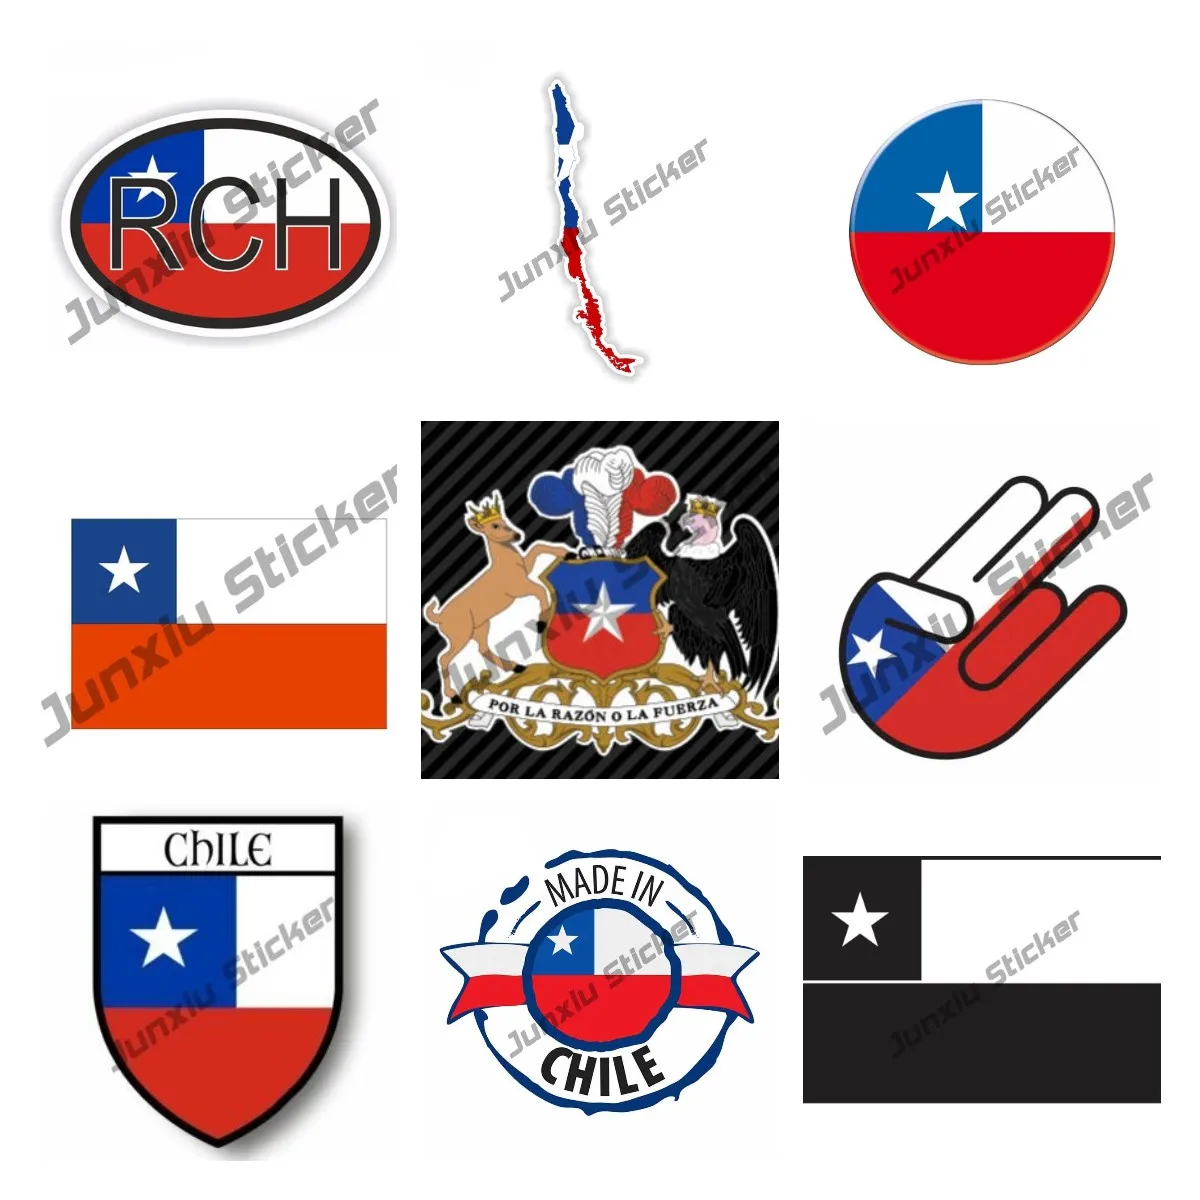 

Индивидуальная наклейка с флагом Чили, наклейка с гербом Чили, самоклеящаяся виниловая наклейка, карта Чили, RCH, наклейка для автомобиля, акс...